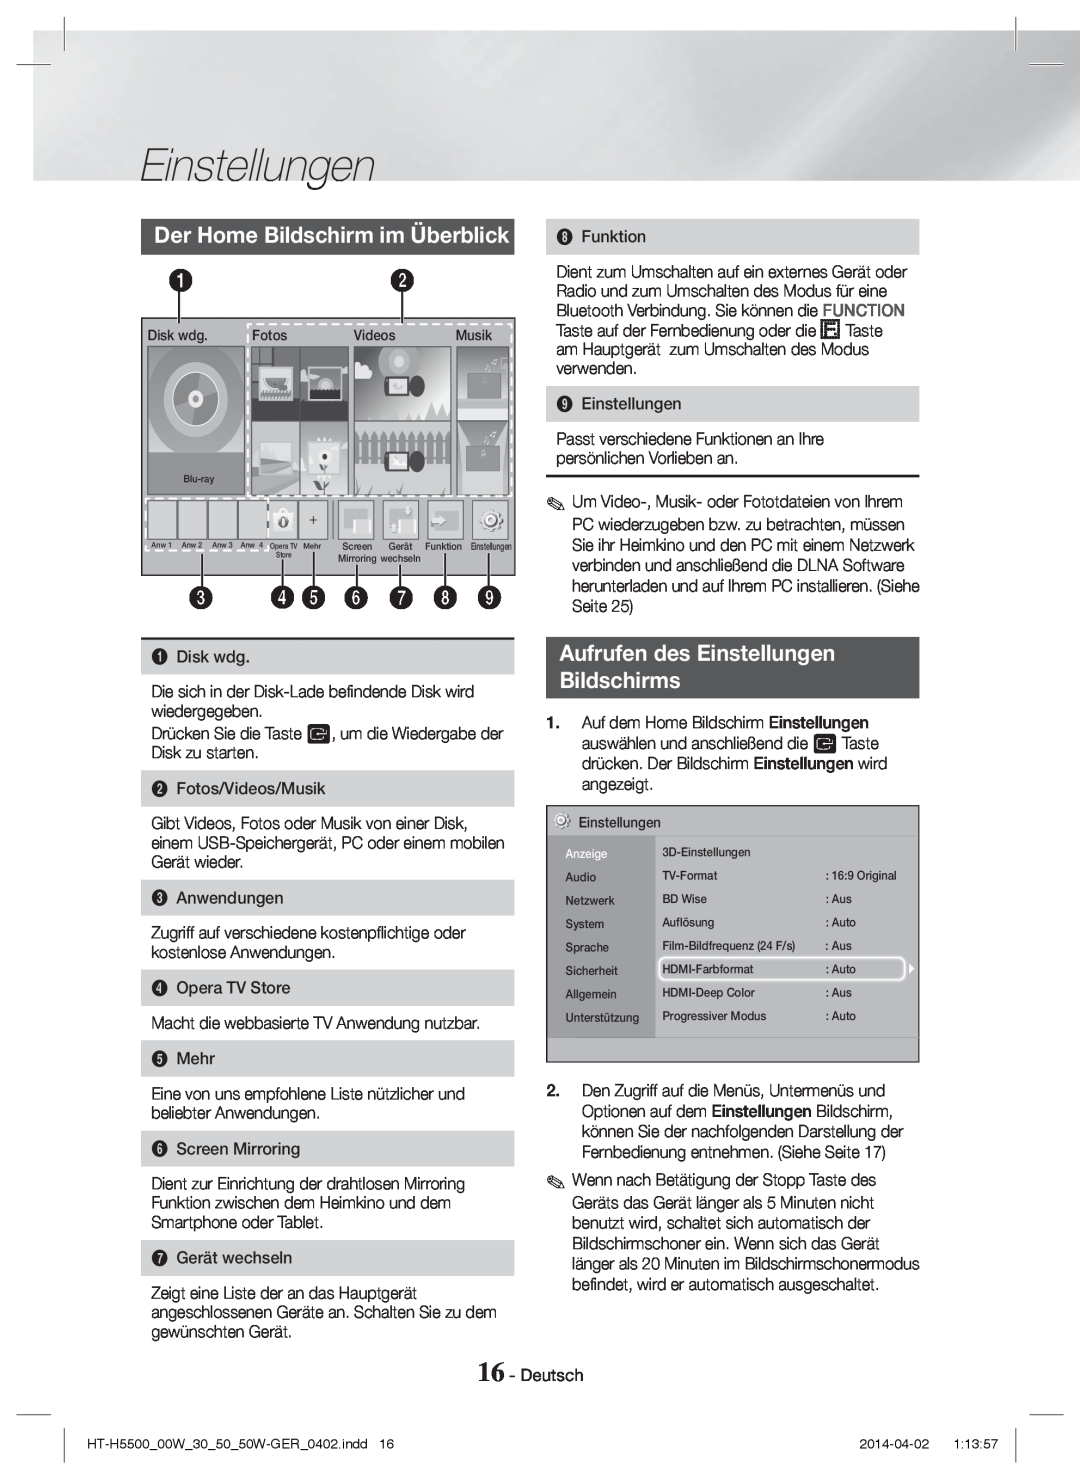 Samsung HT-H5530/ZF manual Der Home Bildschirm im Überblick, Aufrufen des Einstellungen Bildschirms, 3 4 5 6 7 8, Anzeige 